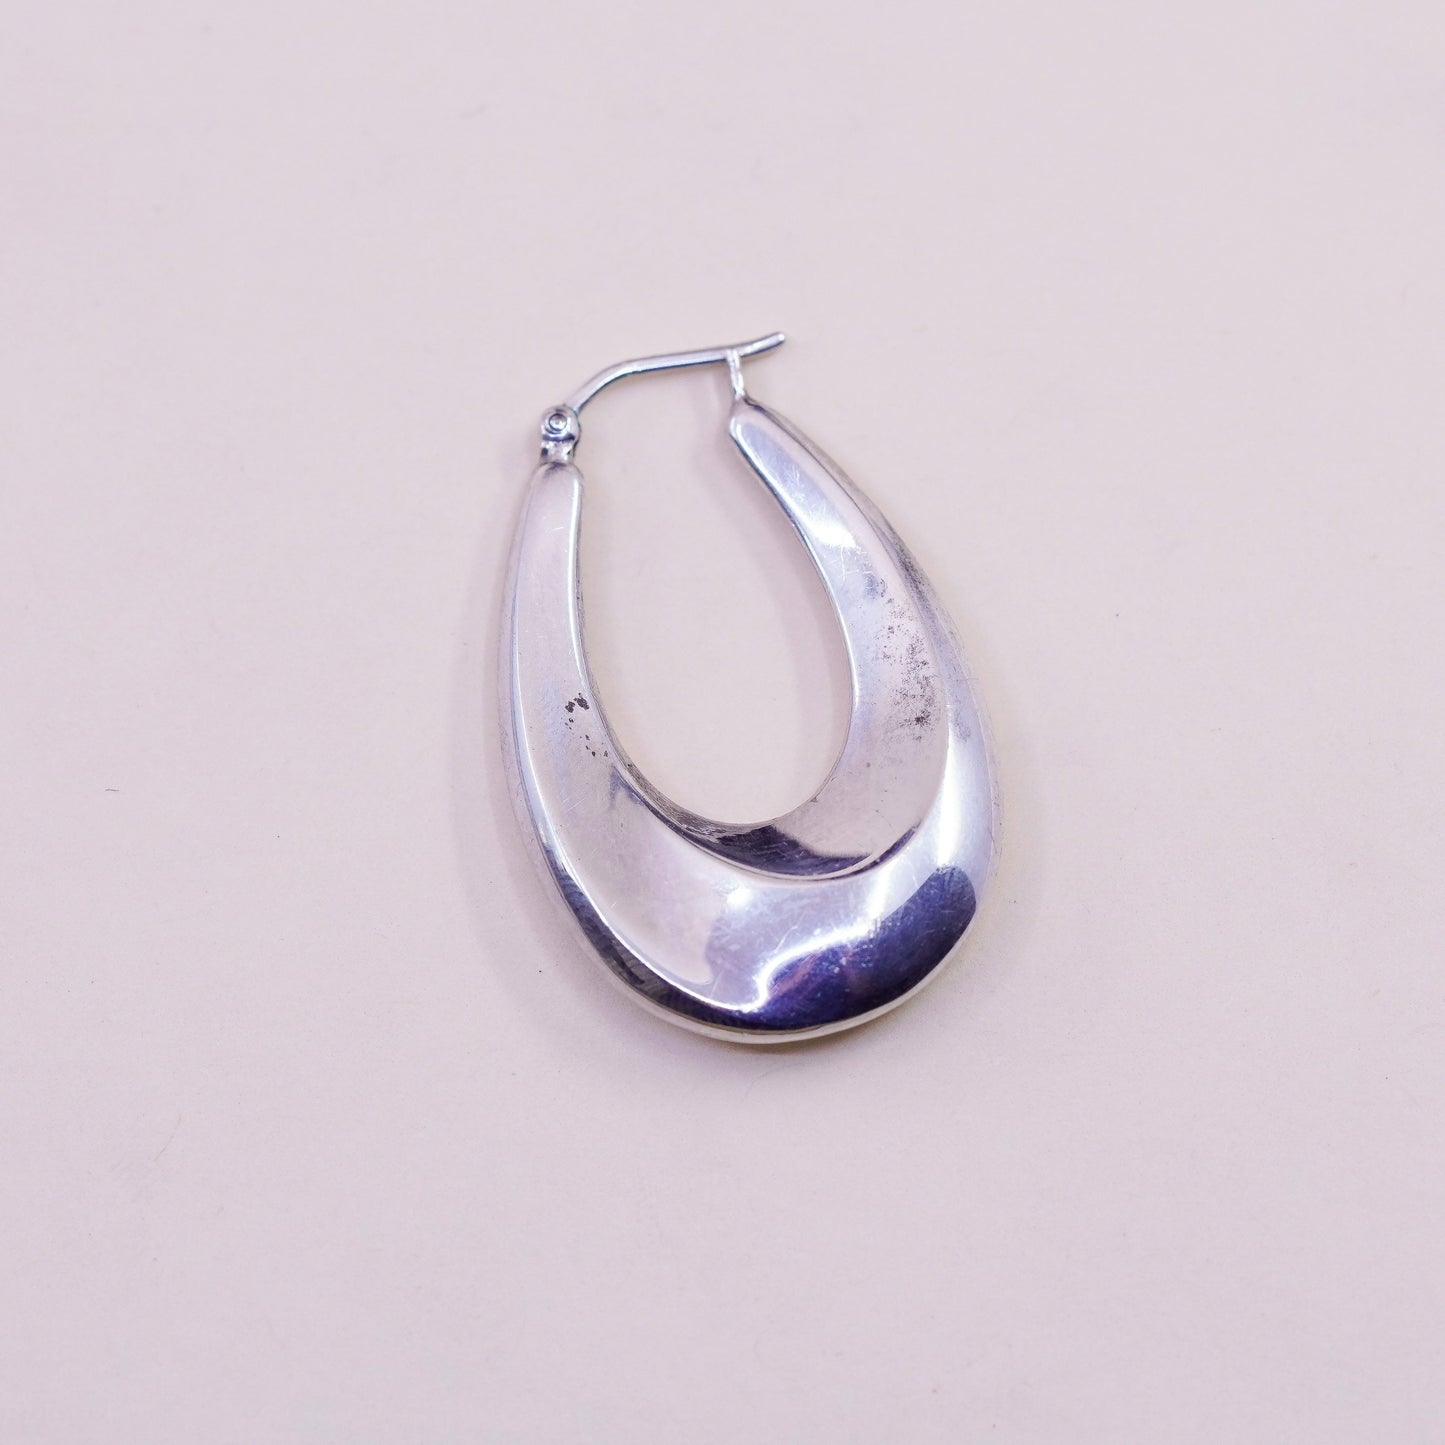 1.25” Vintage sterling silver oval earrings, minimalist primitive Huggie hoops